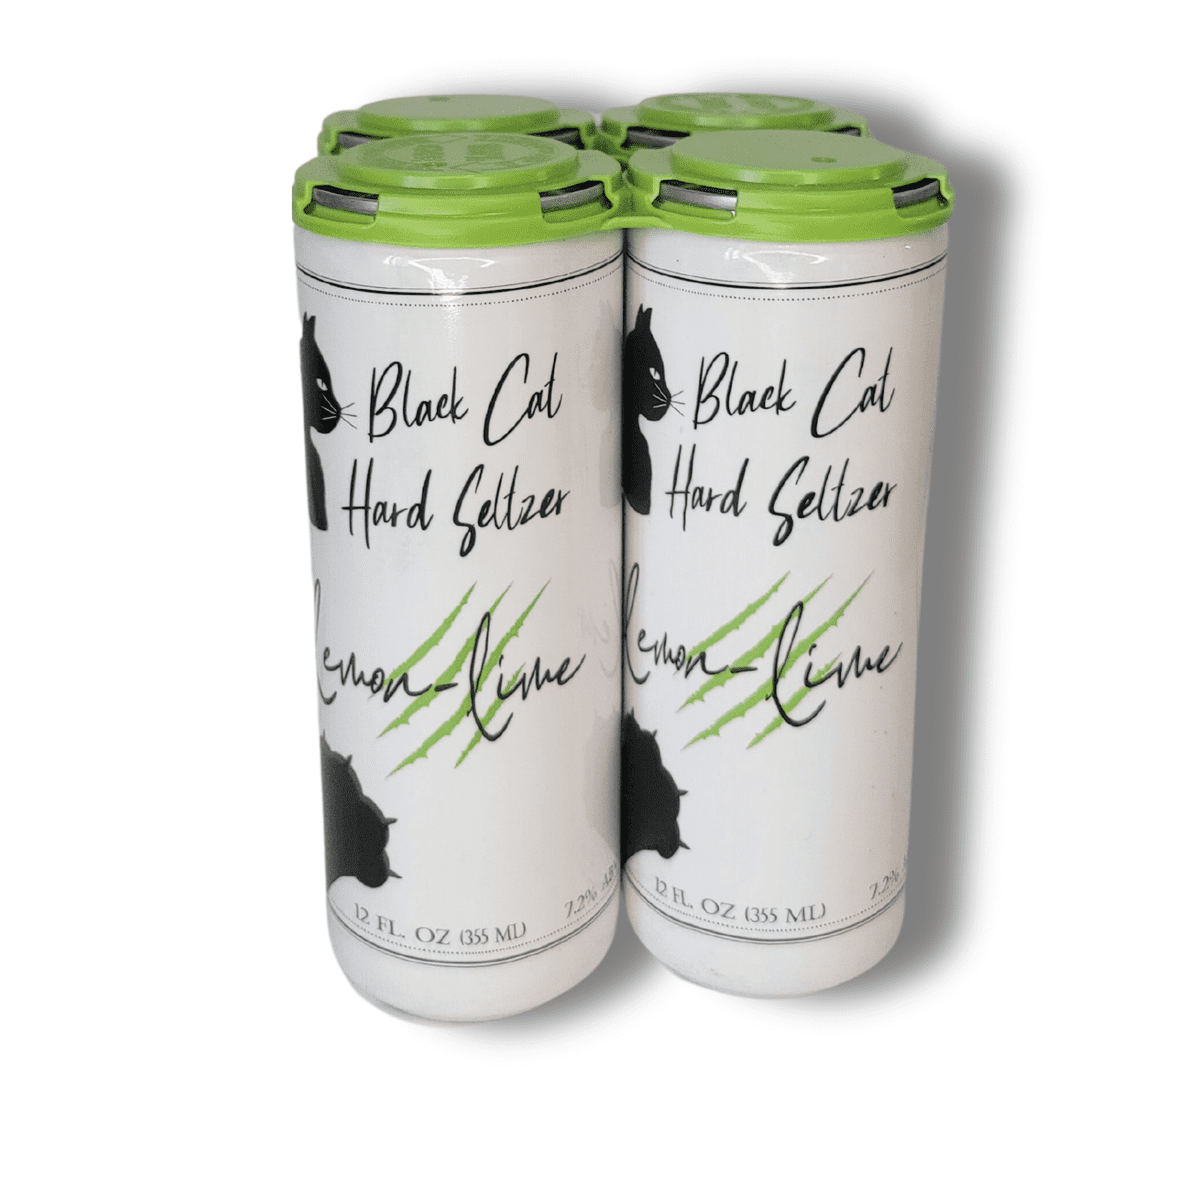 Black Dog - Lemon Lime Seltzer - 12oz Sleek Cans - 24-pack